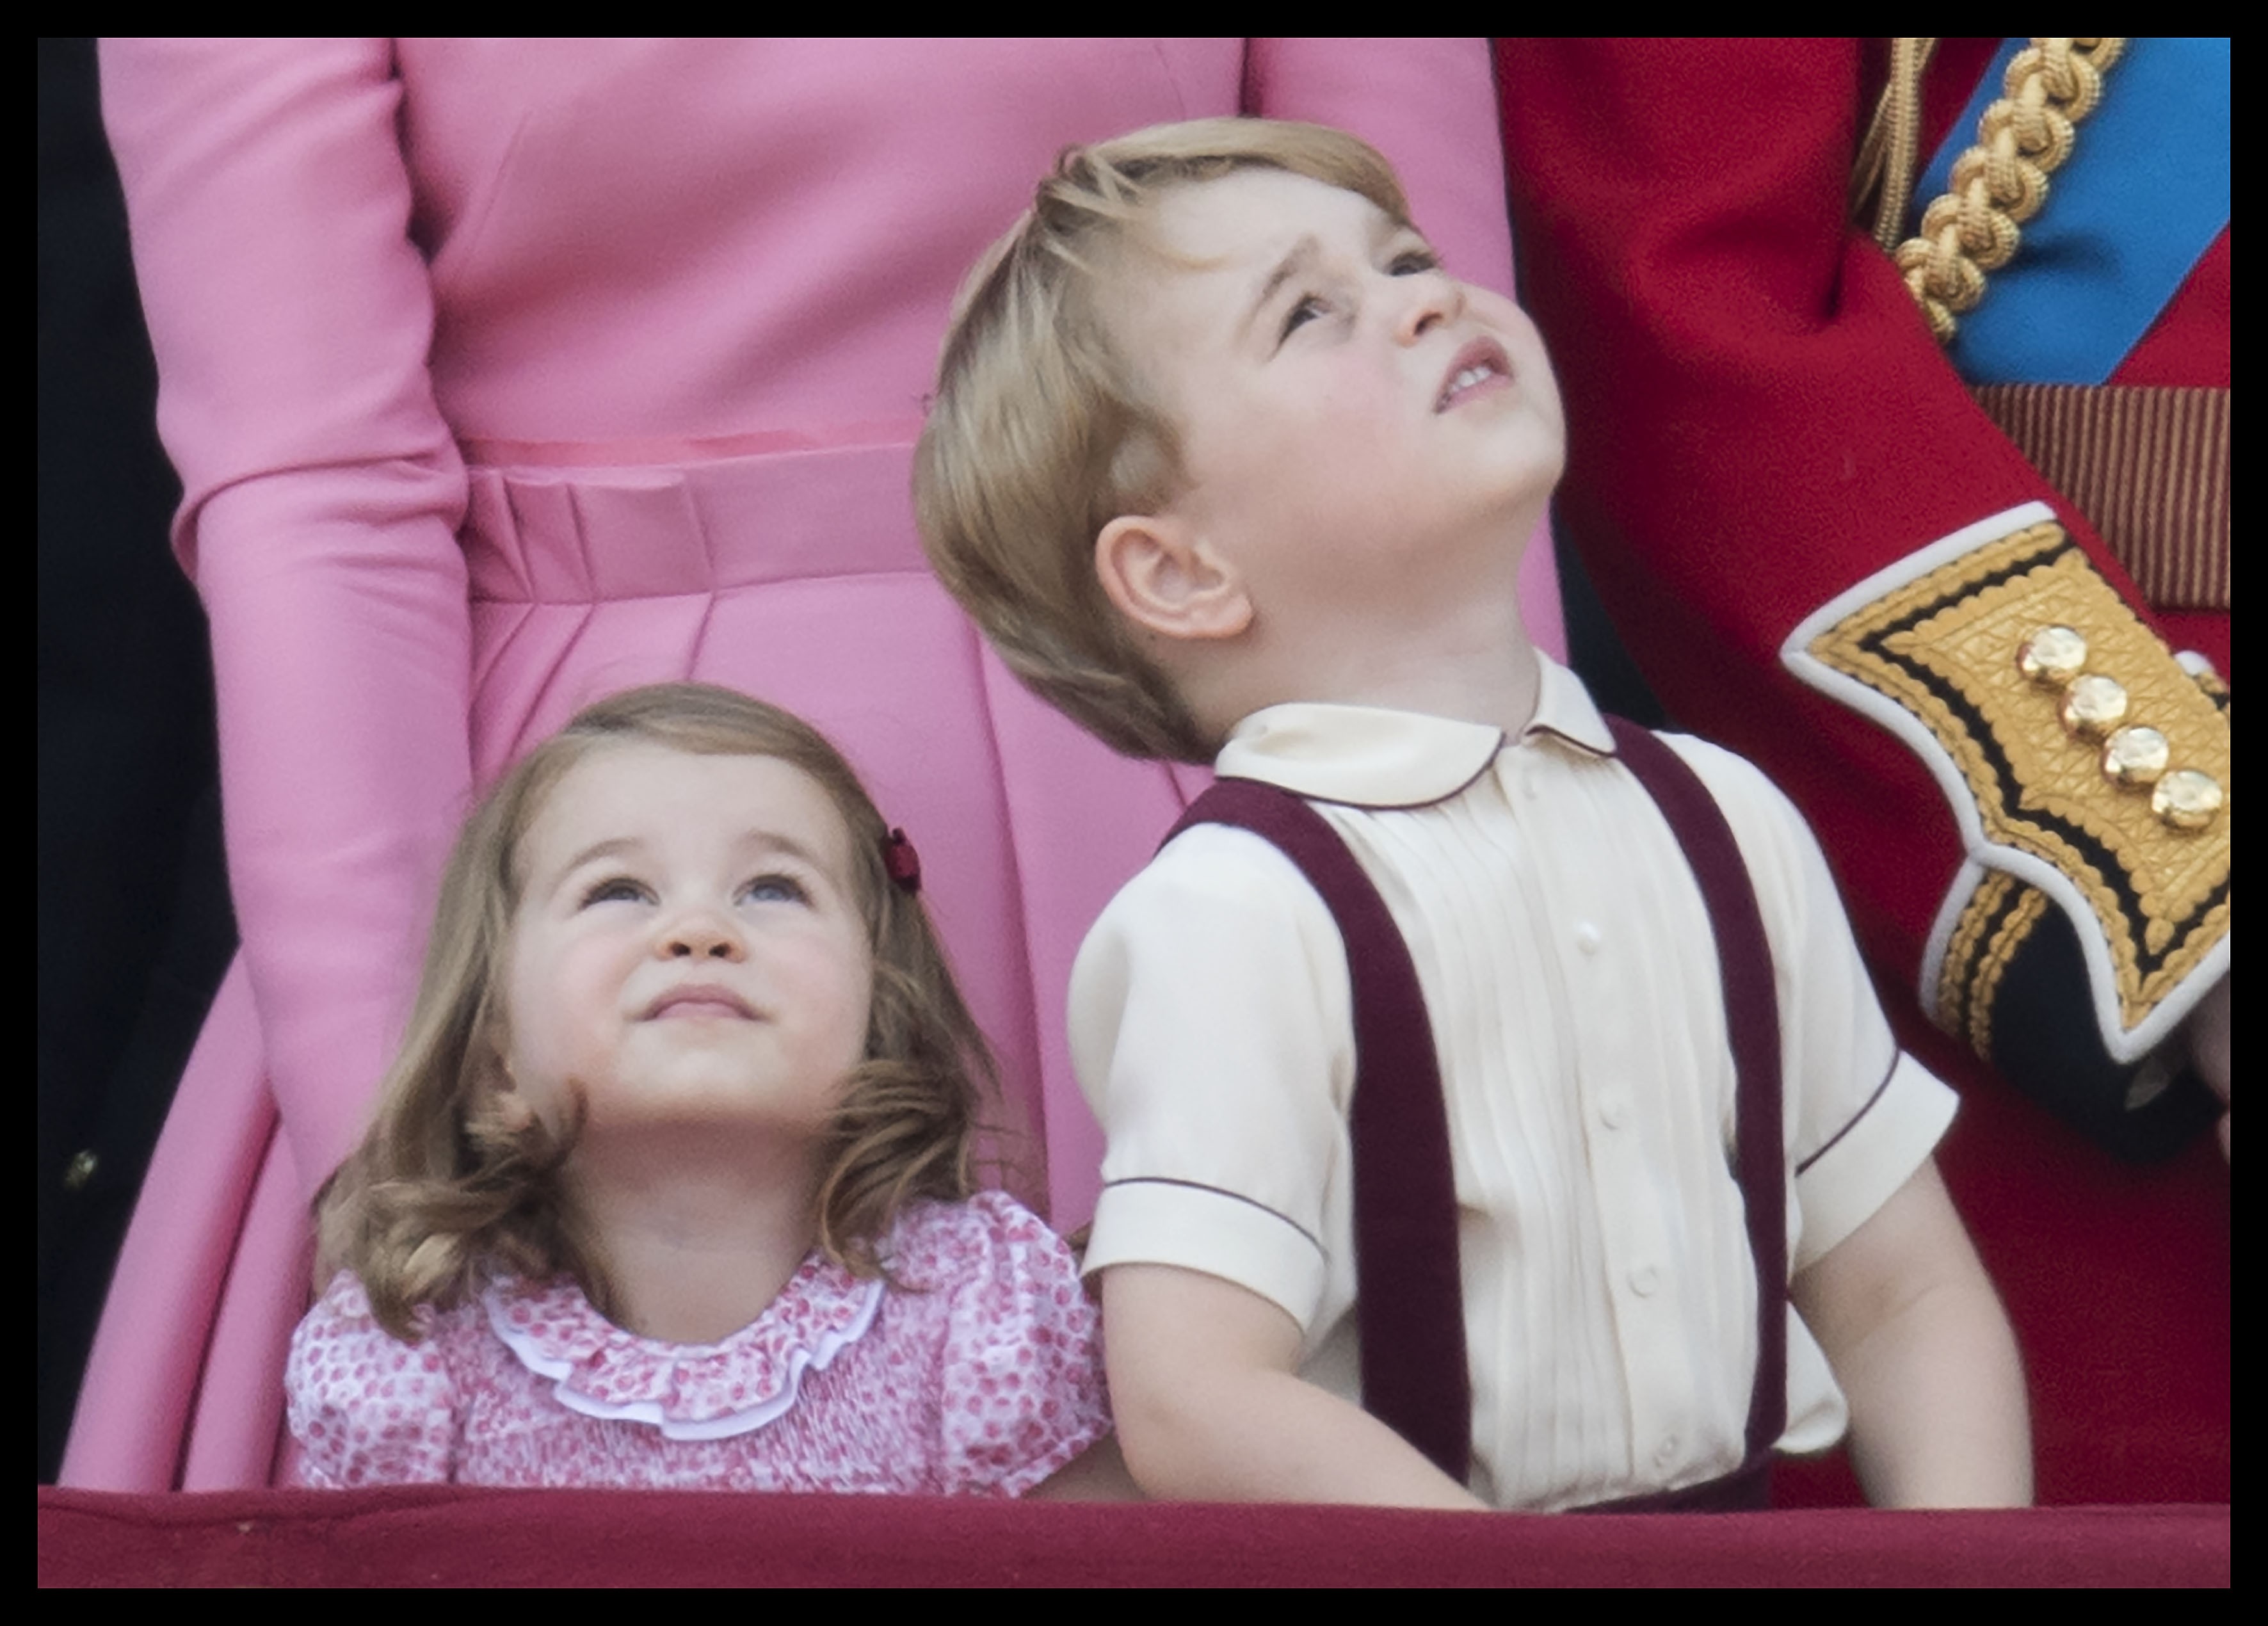 Цветущая и счастливая: Кейт Миддлтон с подросшими детьми очаровала зрителей парада (ФОТО)